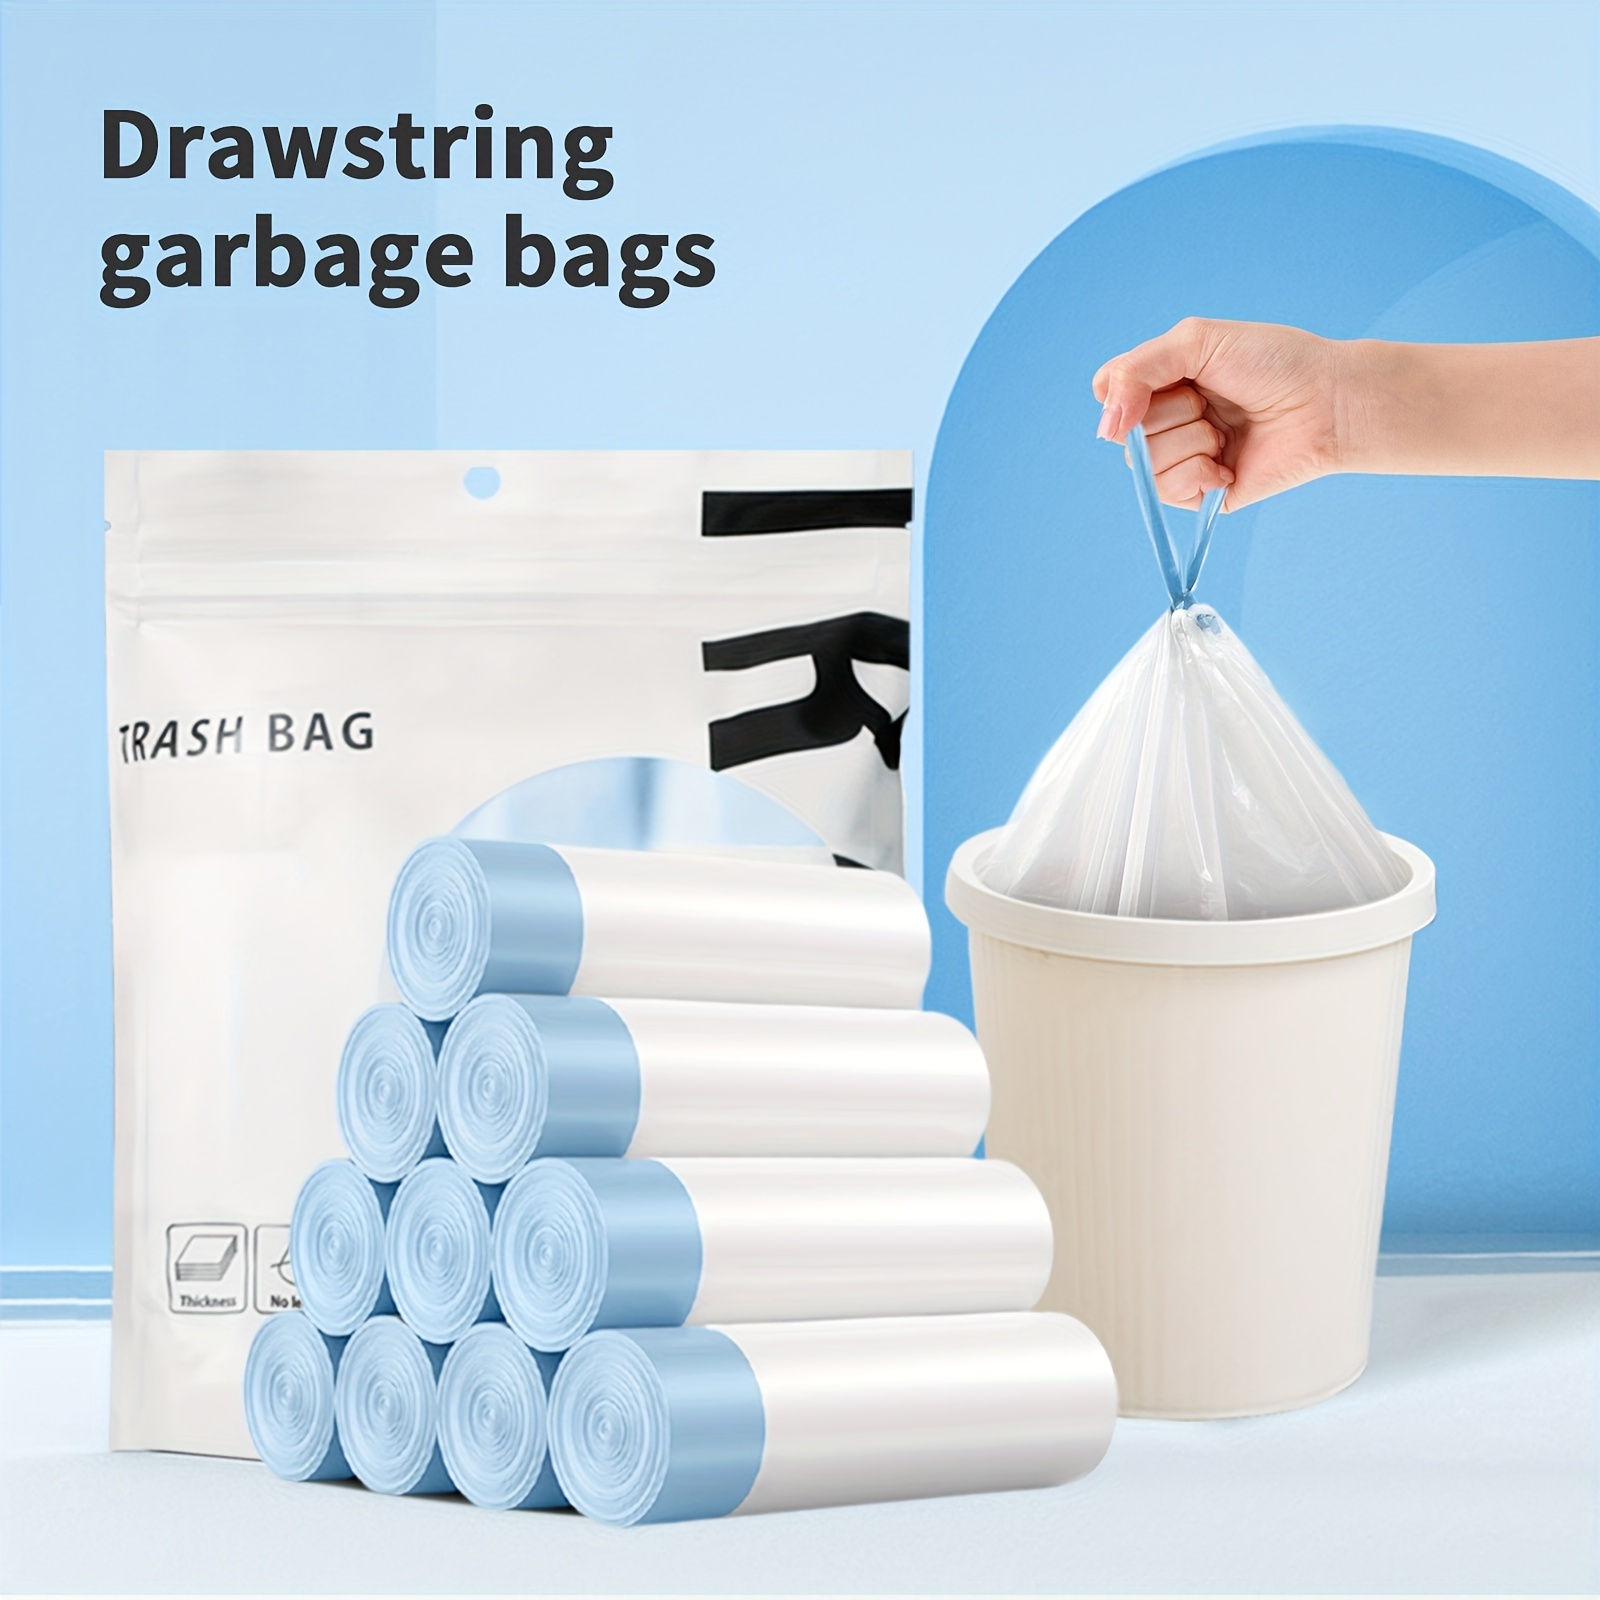  4 Gallon Drawstring Garbage Bags, Drawstring Trash